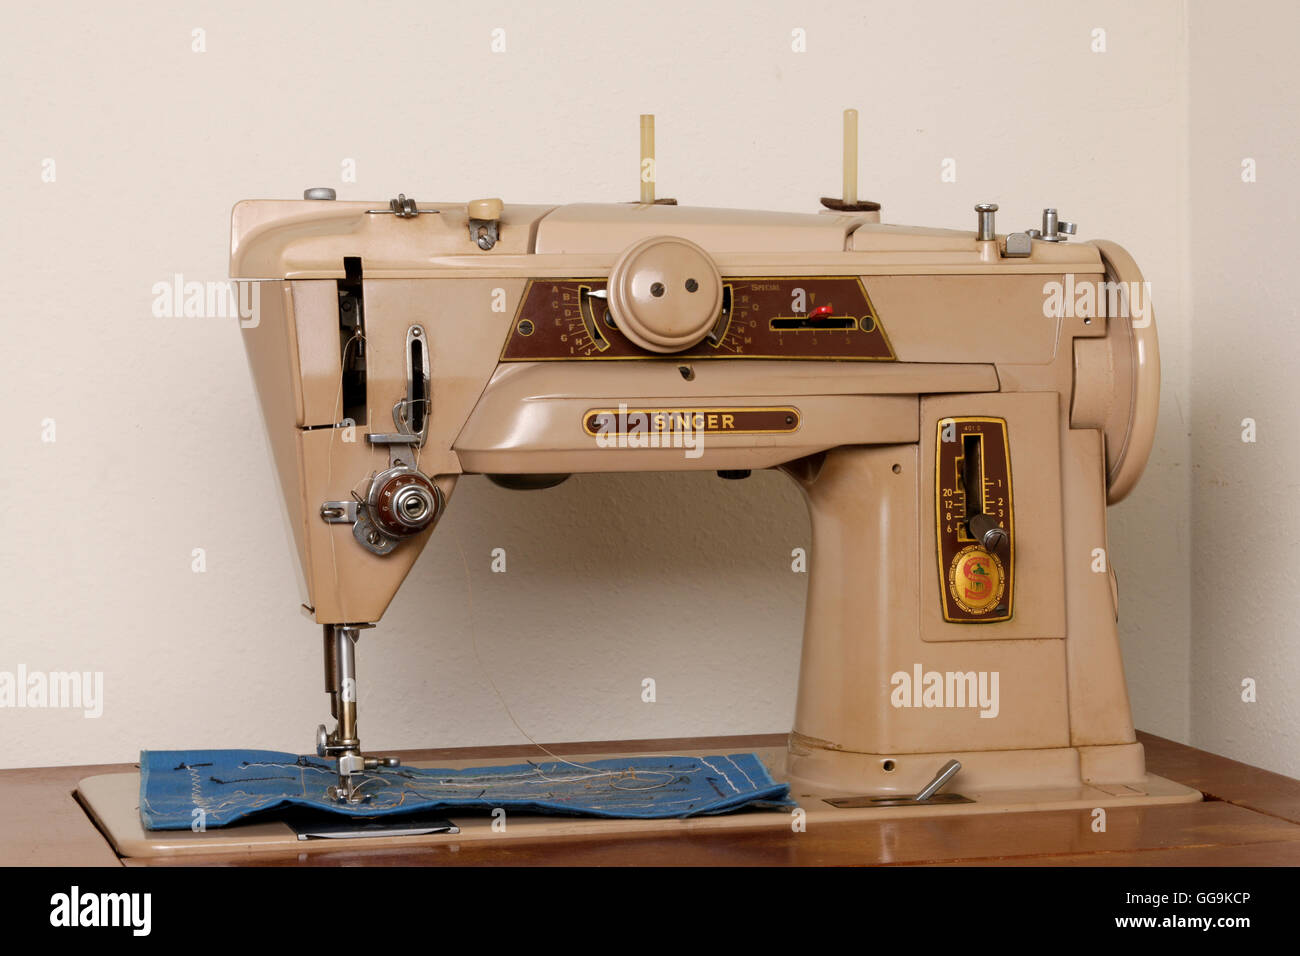 Máquina de coser Singer 1960 Foto de stock